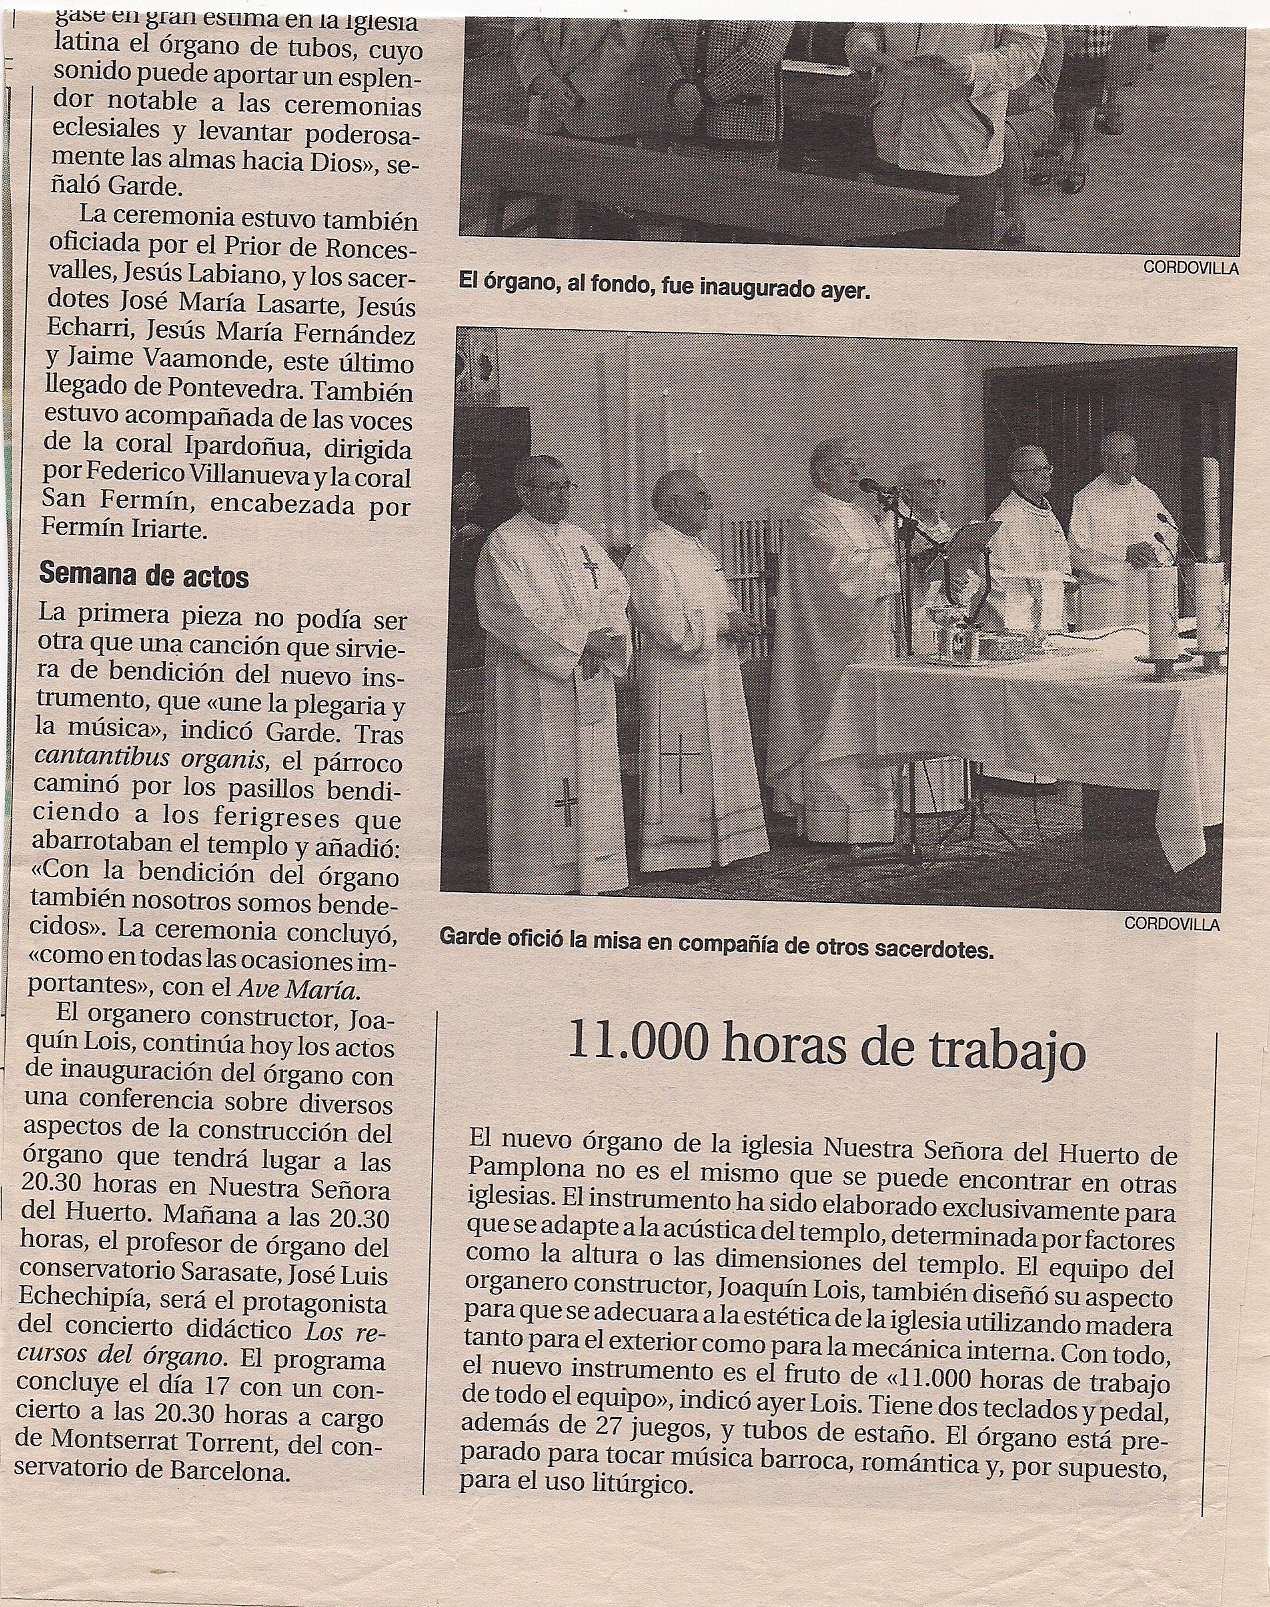 Año 2003. Recorte de prensa sobre la inaguración del órgano (Diario de Navarra)